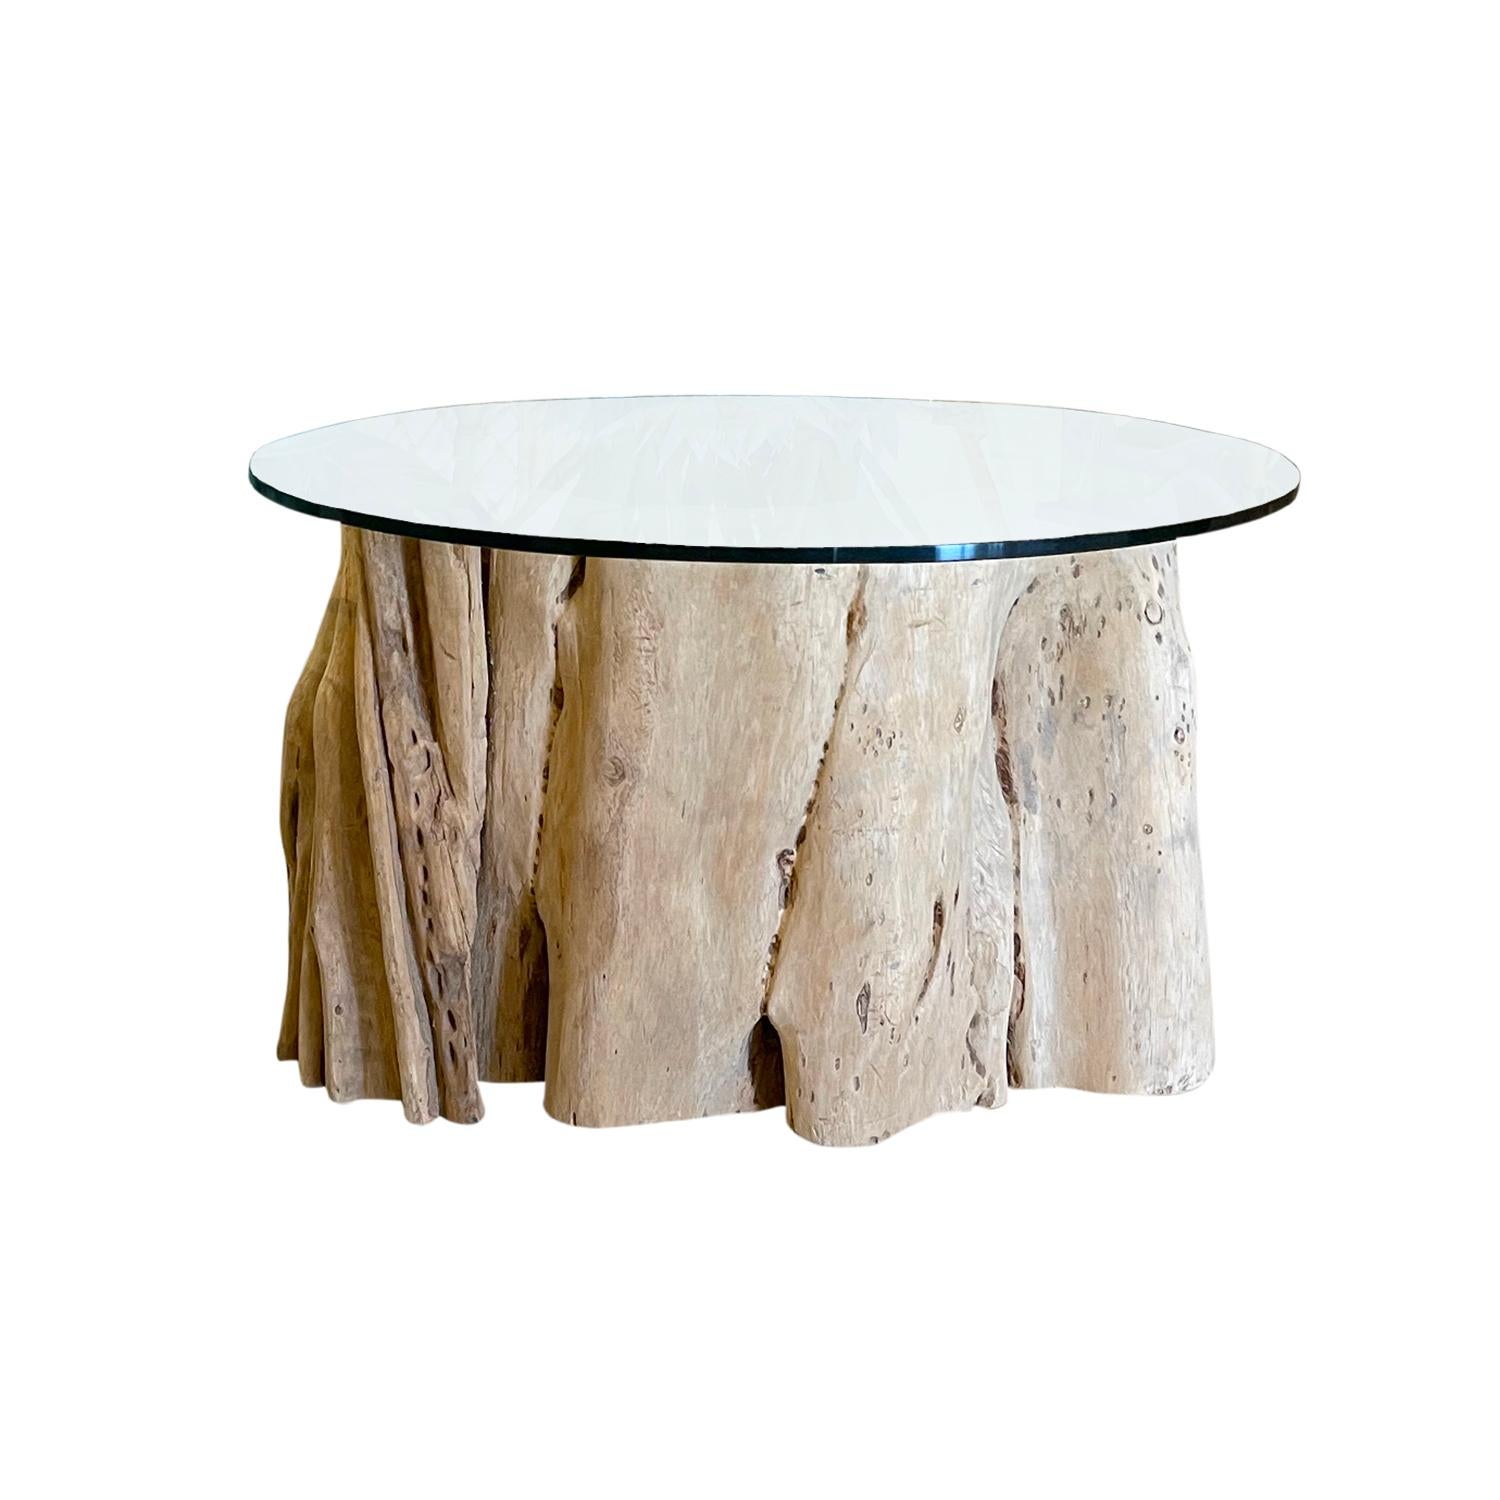 Ein ähnliches belgisches Set von Affen Couchtischen aus handgefertigtem Holz, in gutem Zustand. Das Sofa und die Beistelltische sind mit einer runden Klarglasplatte ausgestattet. Die Größe und das Design des natürlichen Wurzelsockels variieren.